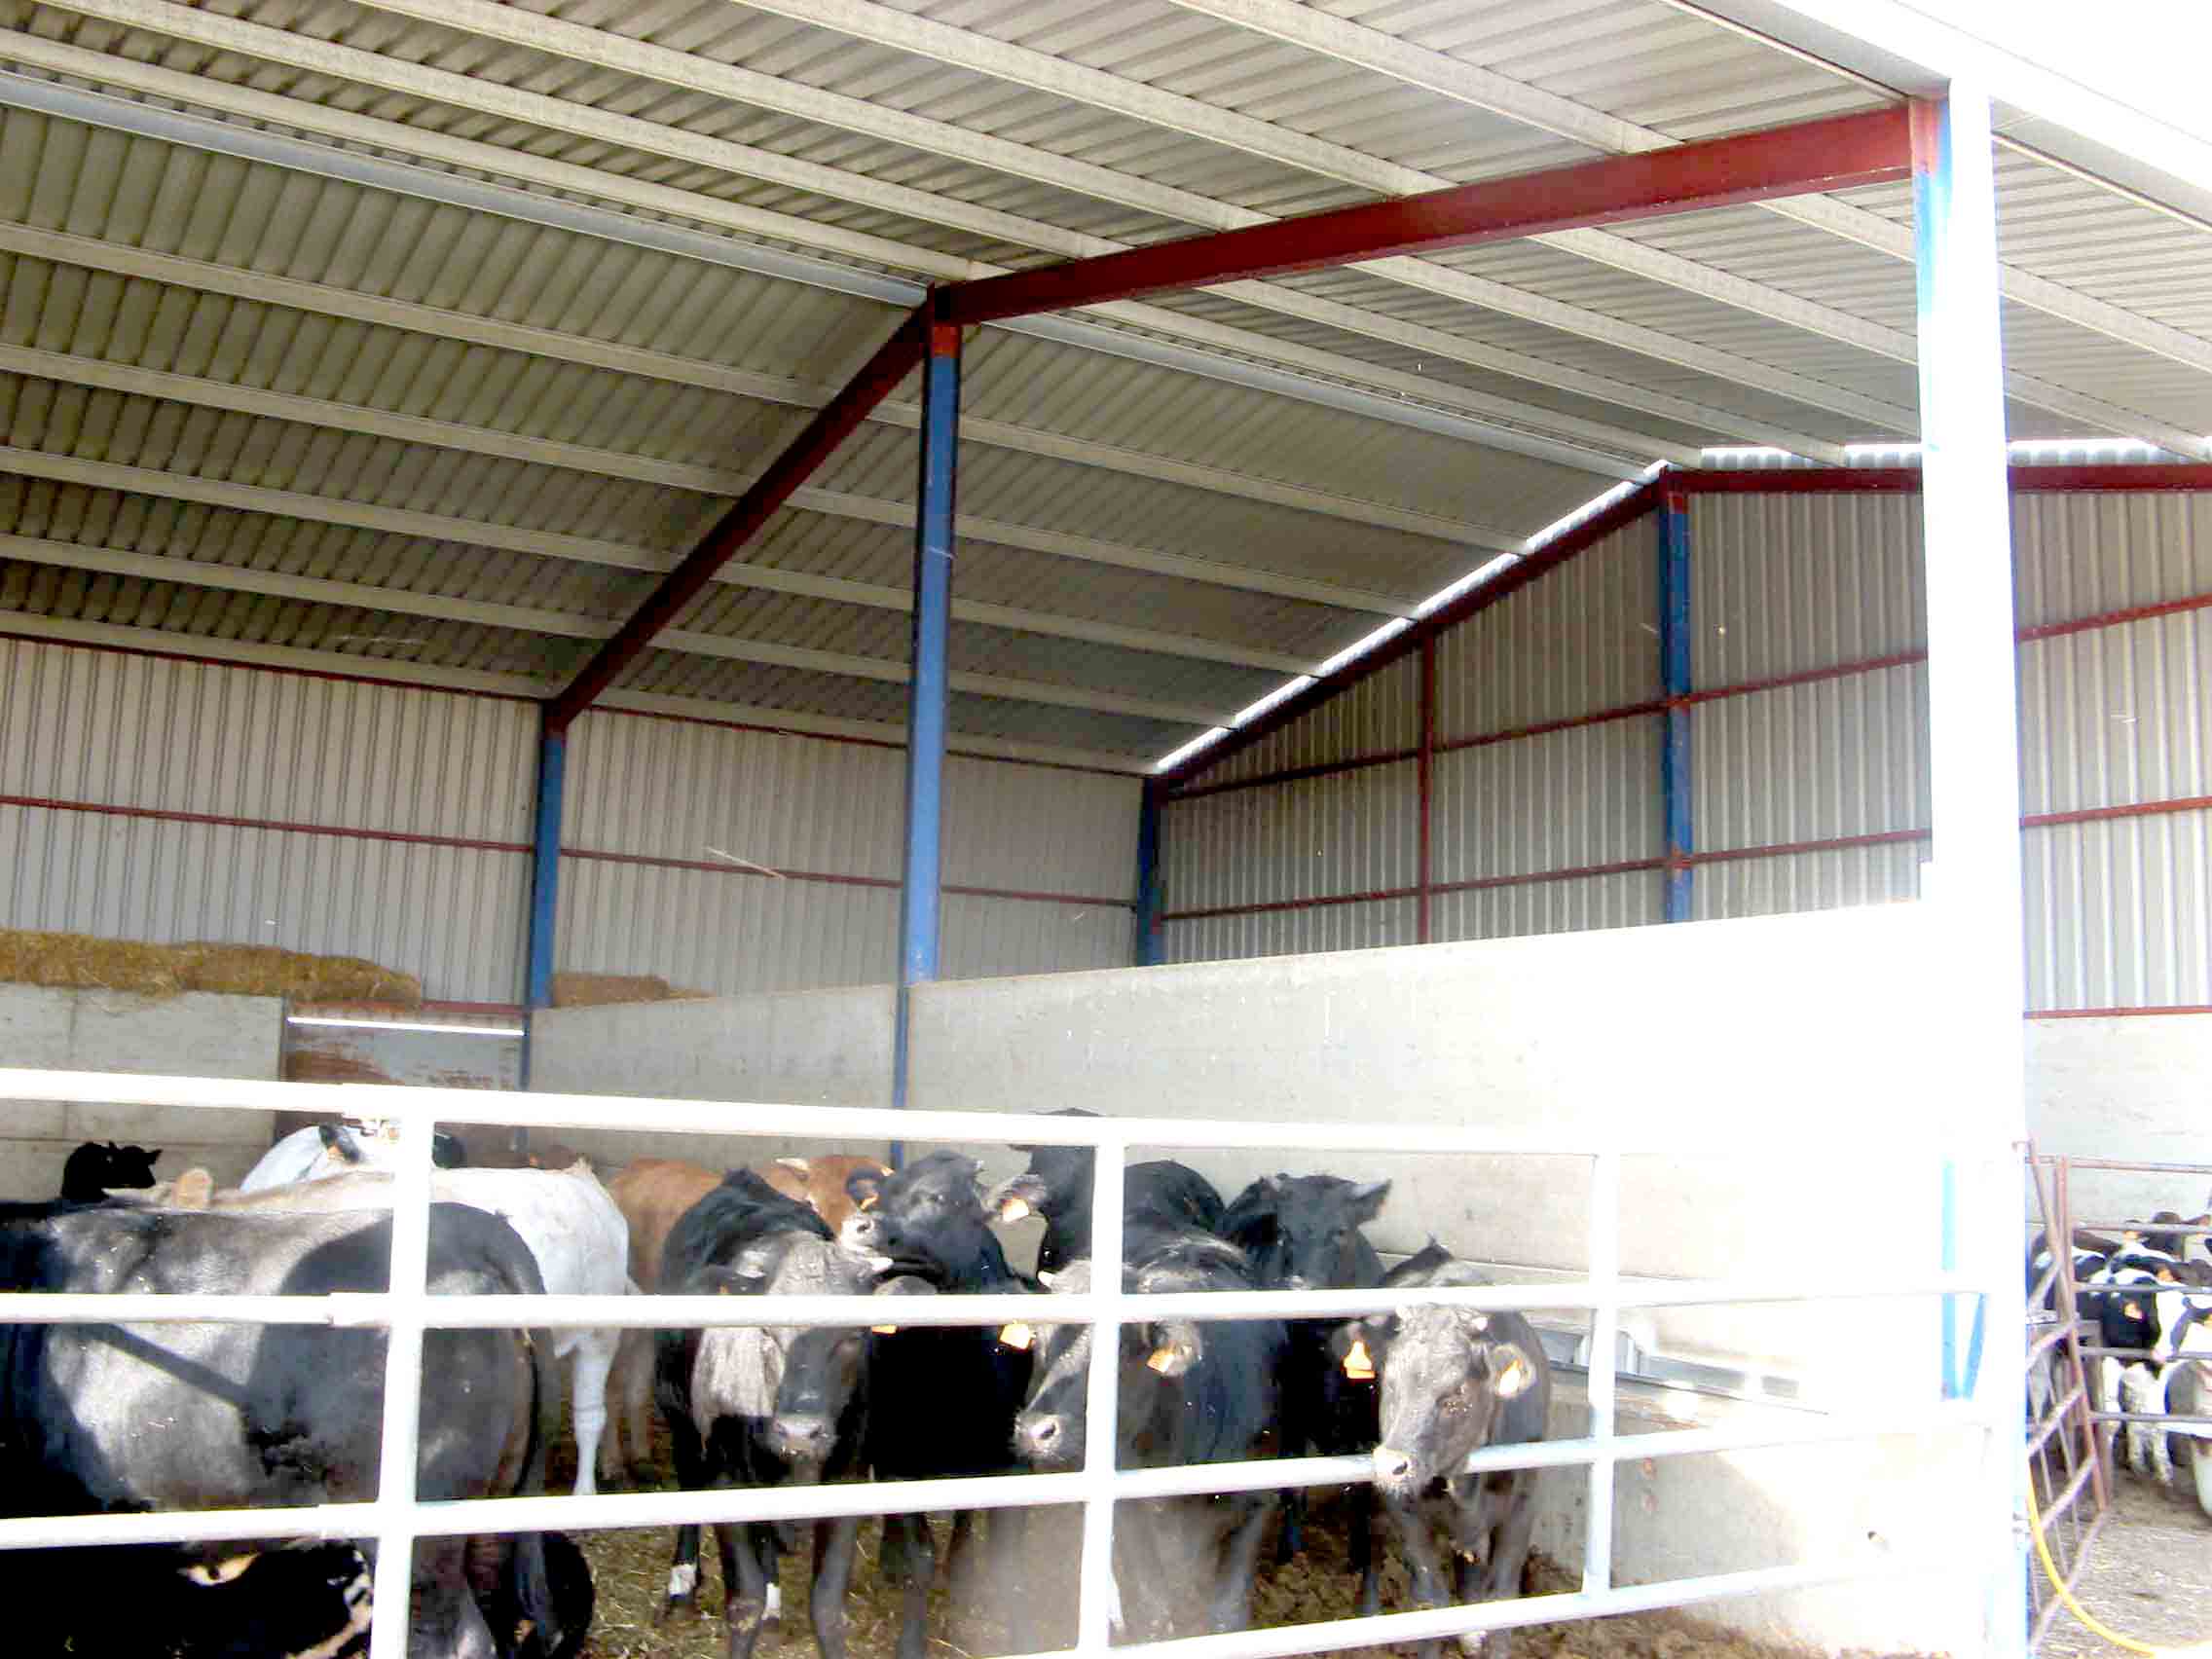 Nave bovina para ganado vacuno a base de estructura metálica y cubierta de chapa grecada, con zócalos de 2,4 m de altura de placa alveolar de hormigón pretensado.